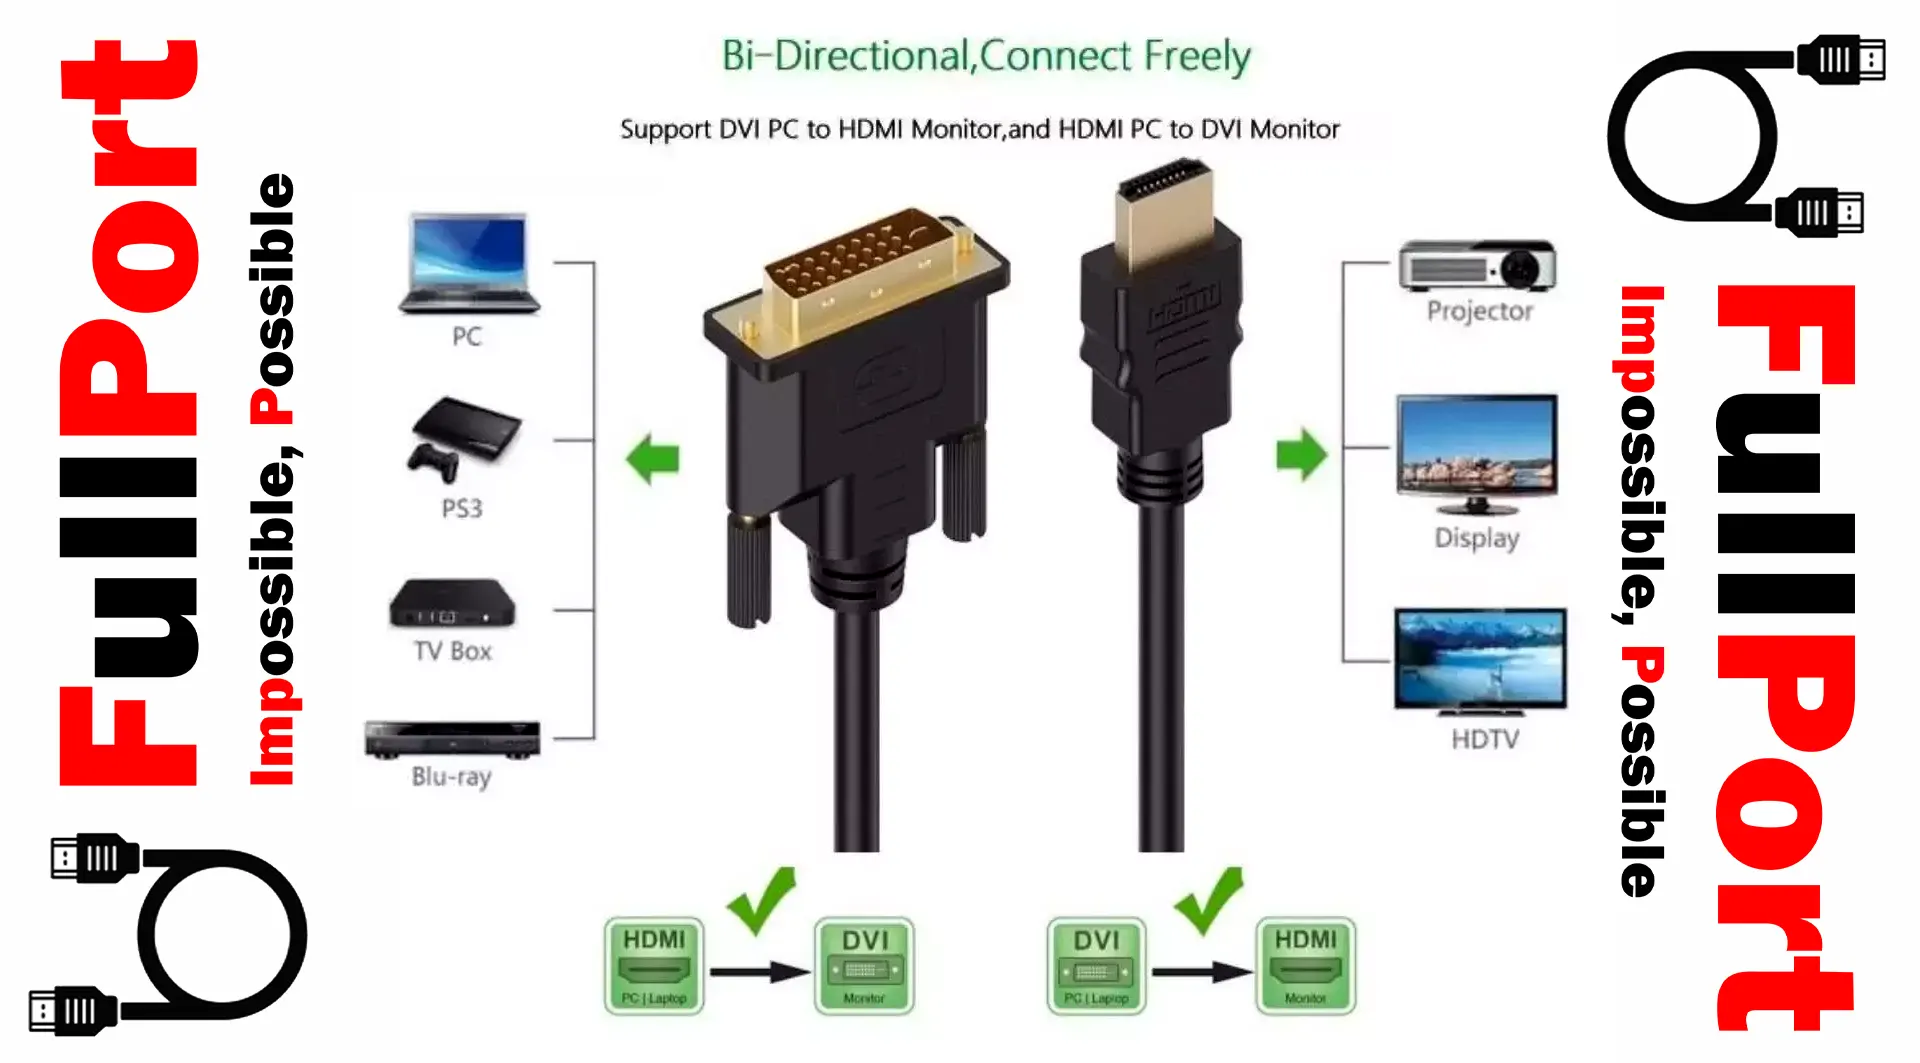 خرید اینترنتی کابل DVI-D به HDMI فول پورت از فروشگاه اینترنتی فول پورت